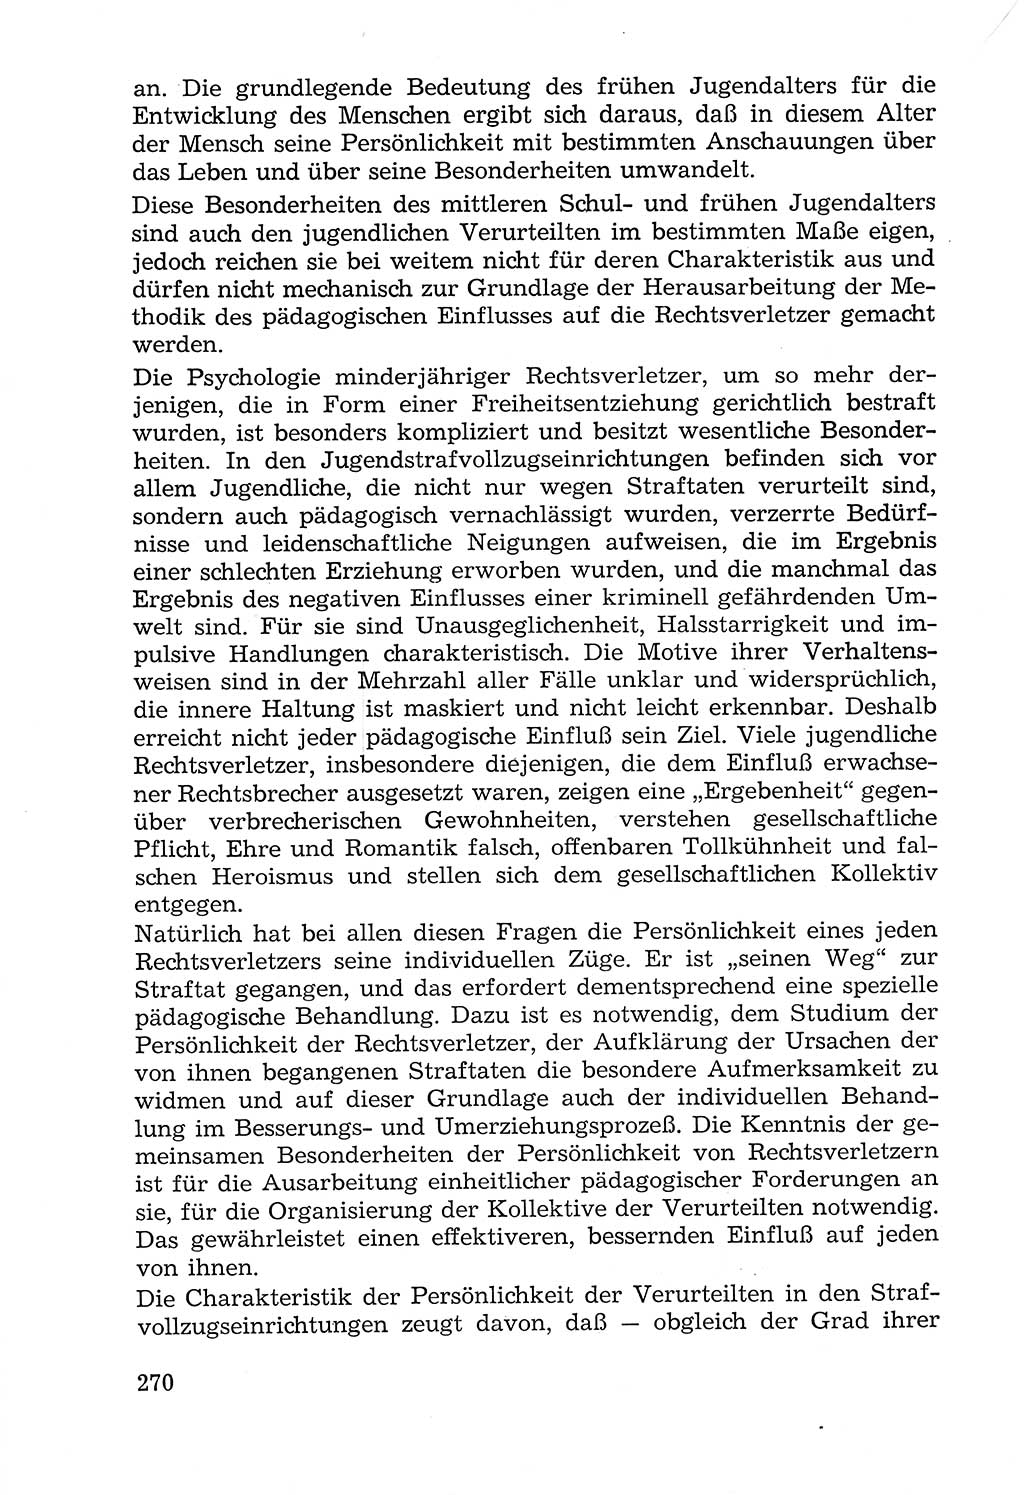 Lehrbuch der Strafvollzugspädagogik [Deutsche Demokratische Republik (DDR)] 1969, Seite 270 (Lb. SV-Pd. DDR 1969, S. 270)